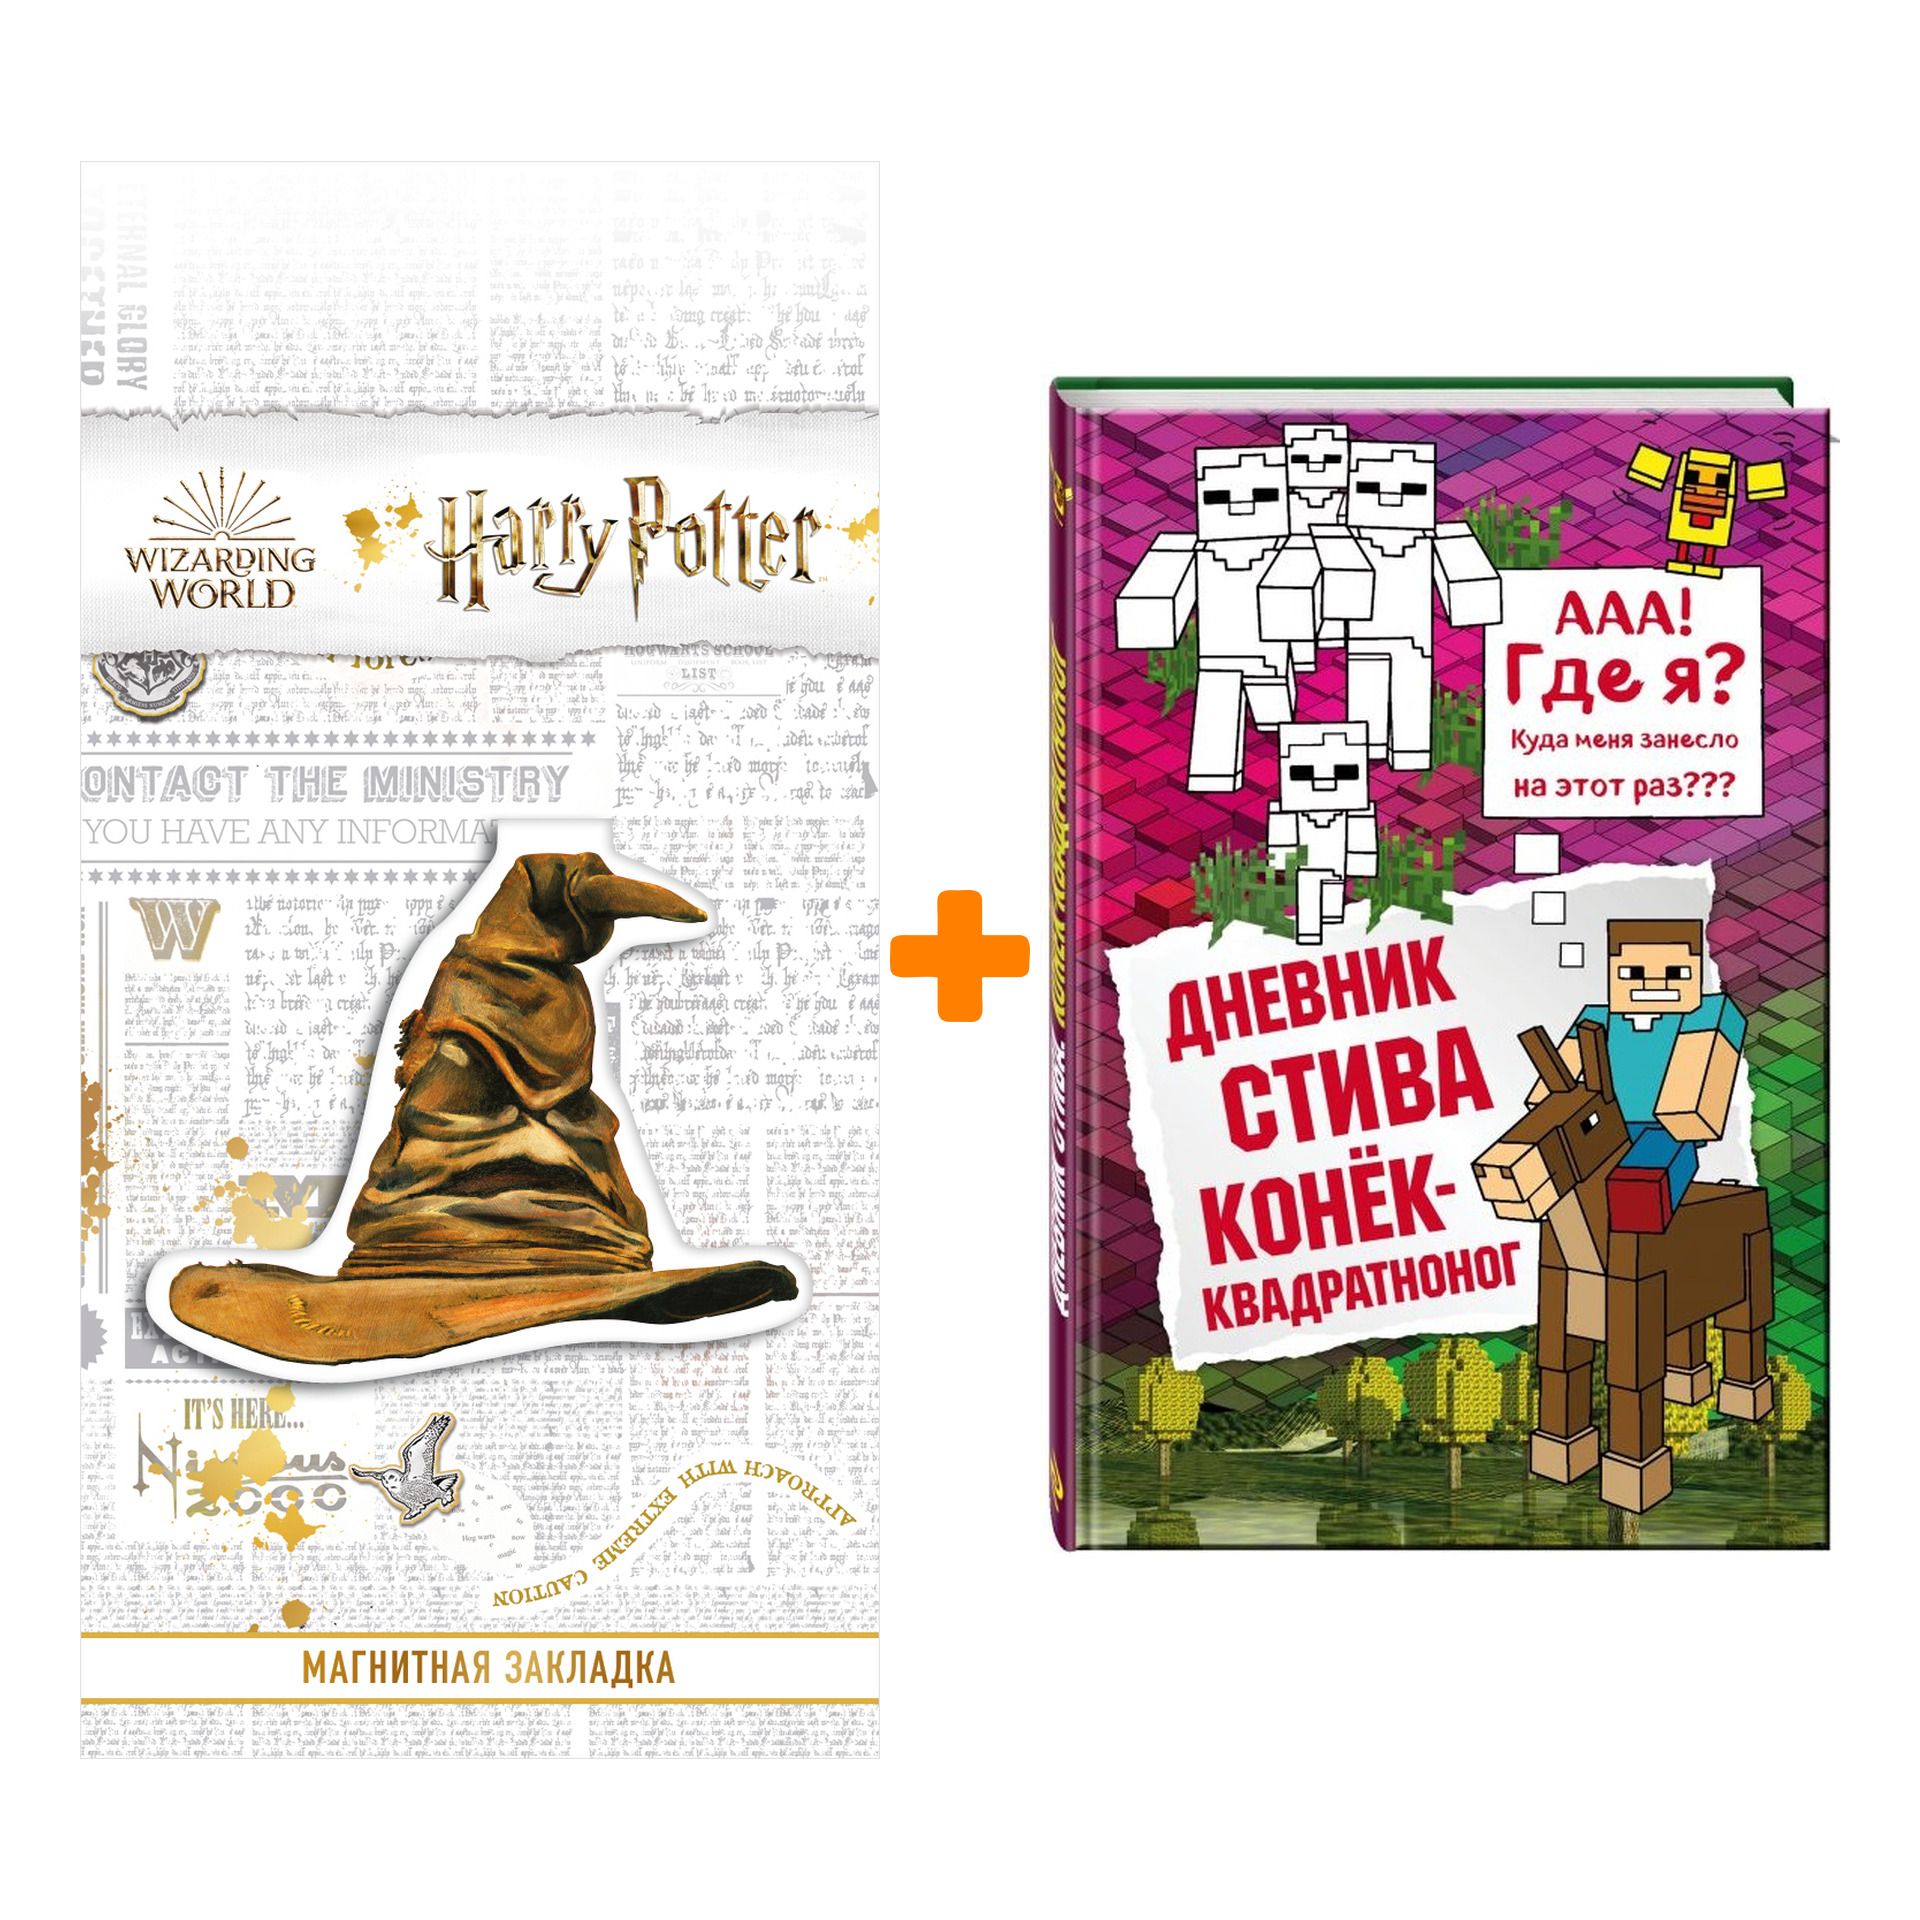 Набор Дневник Стива Книга 2 Конек-квадратноног + Закладка Harry Potter Распределяющая шляпа магнитная